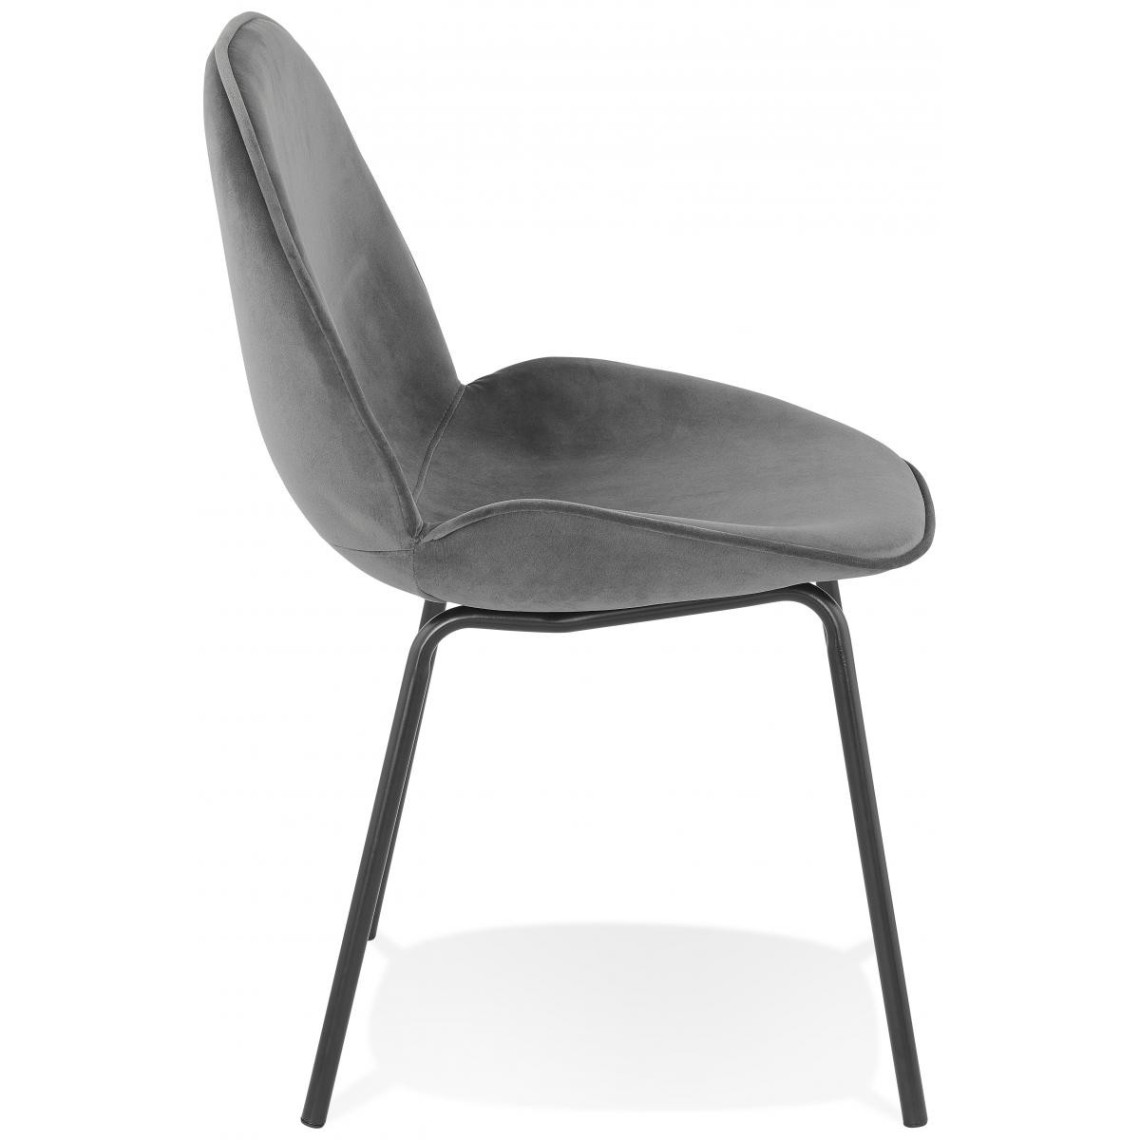 1x Chaises de cuisine chaises Coussins chaise accoudoir velours gris foncé bh203dgr-1